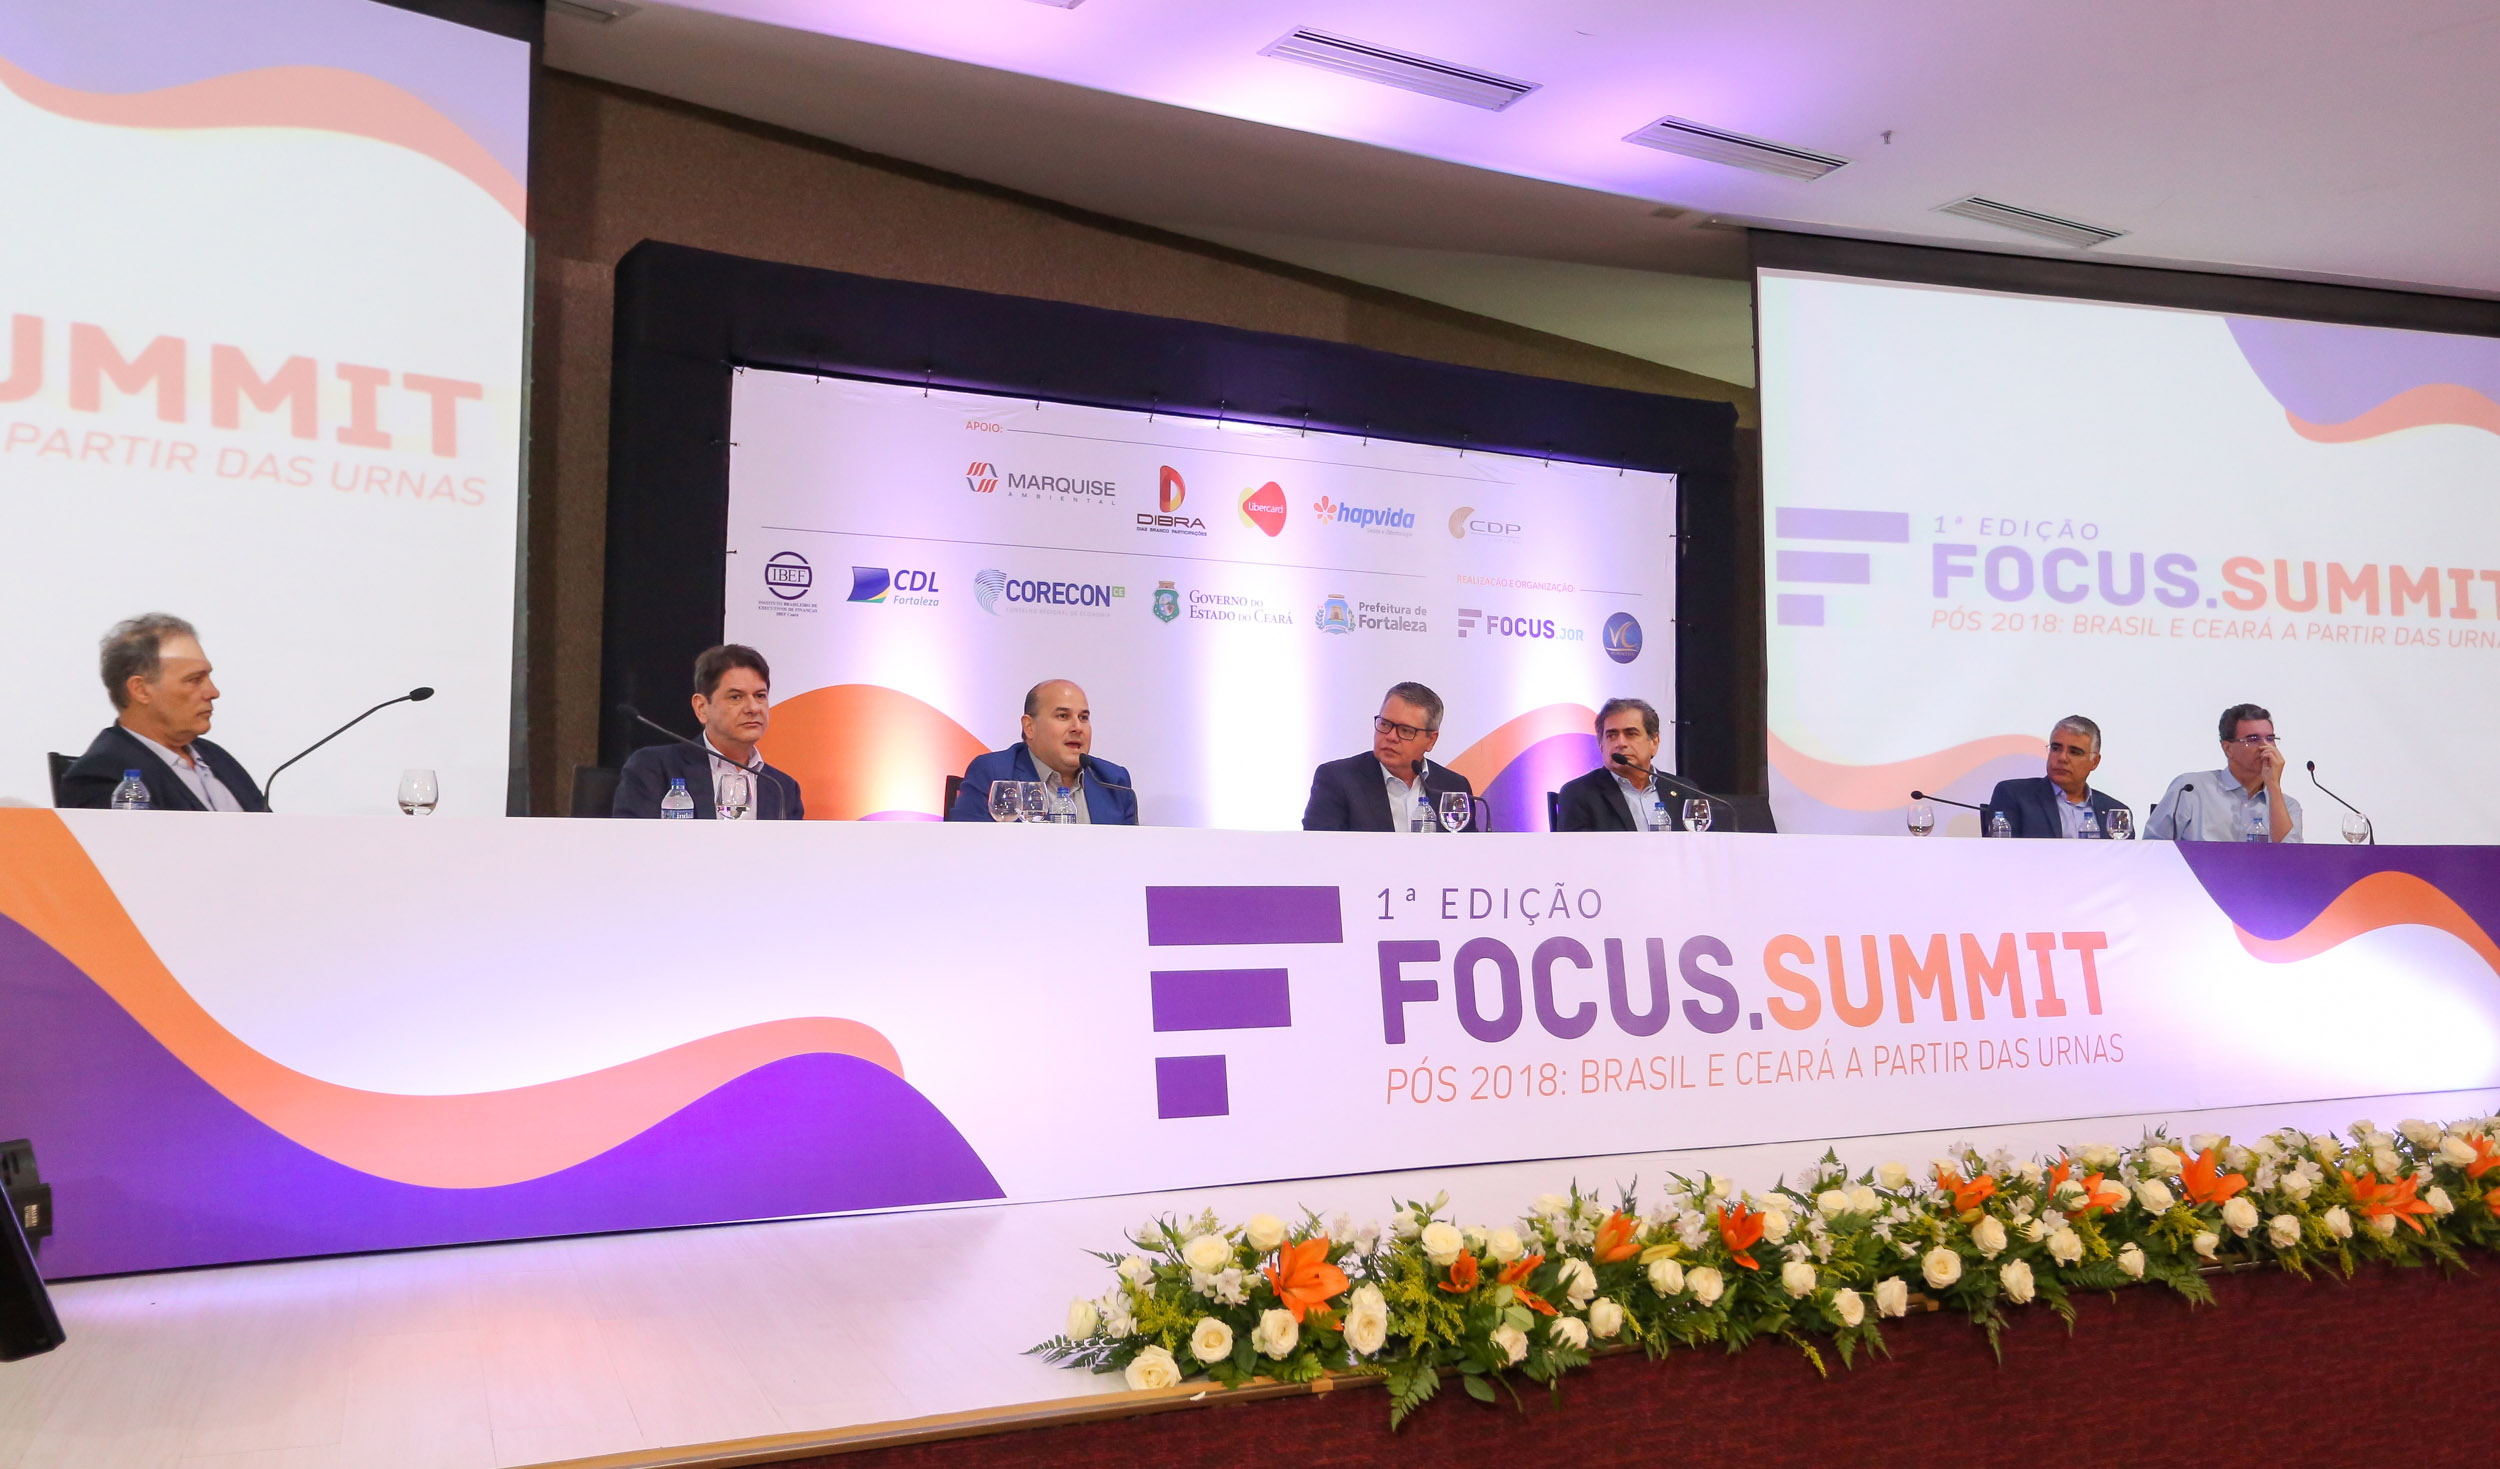 1ª edição do Focus.Summit tem como tema “Pós-2018: Brasil e Ceará a partir das urnas”